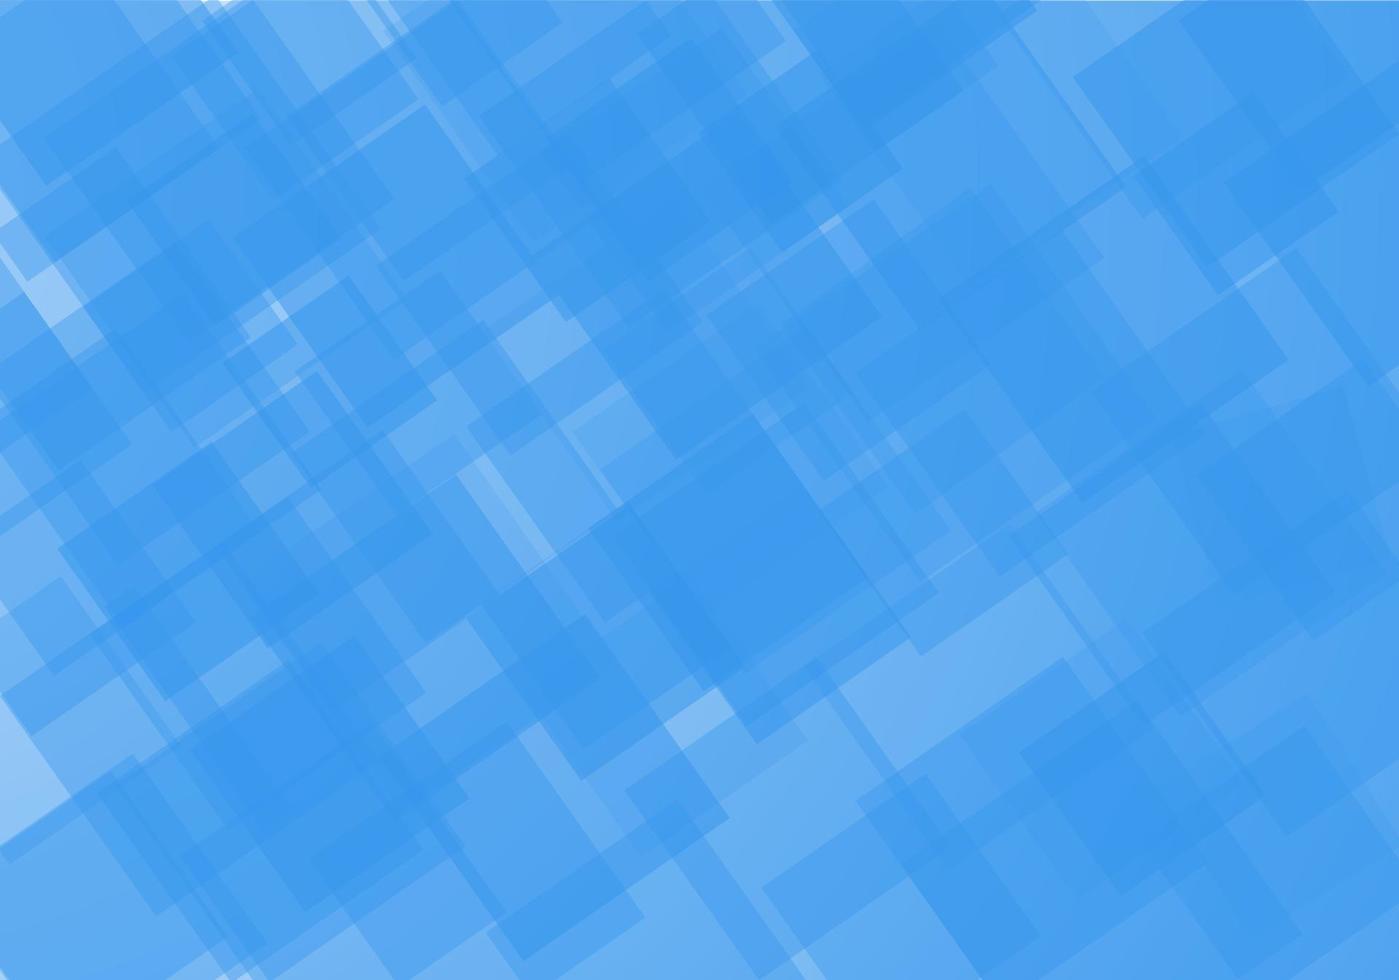 abstracte blauwe achtergrond vector